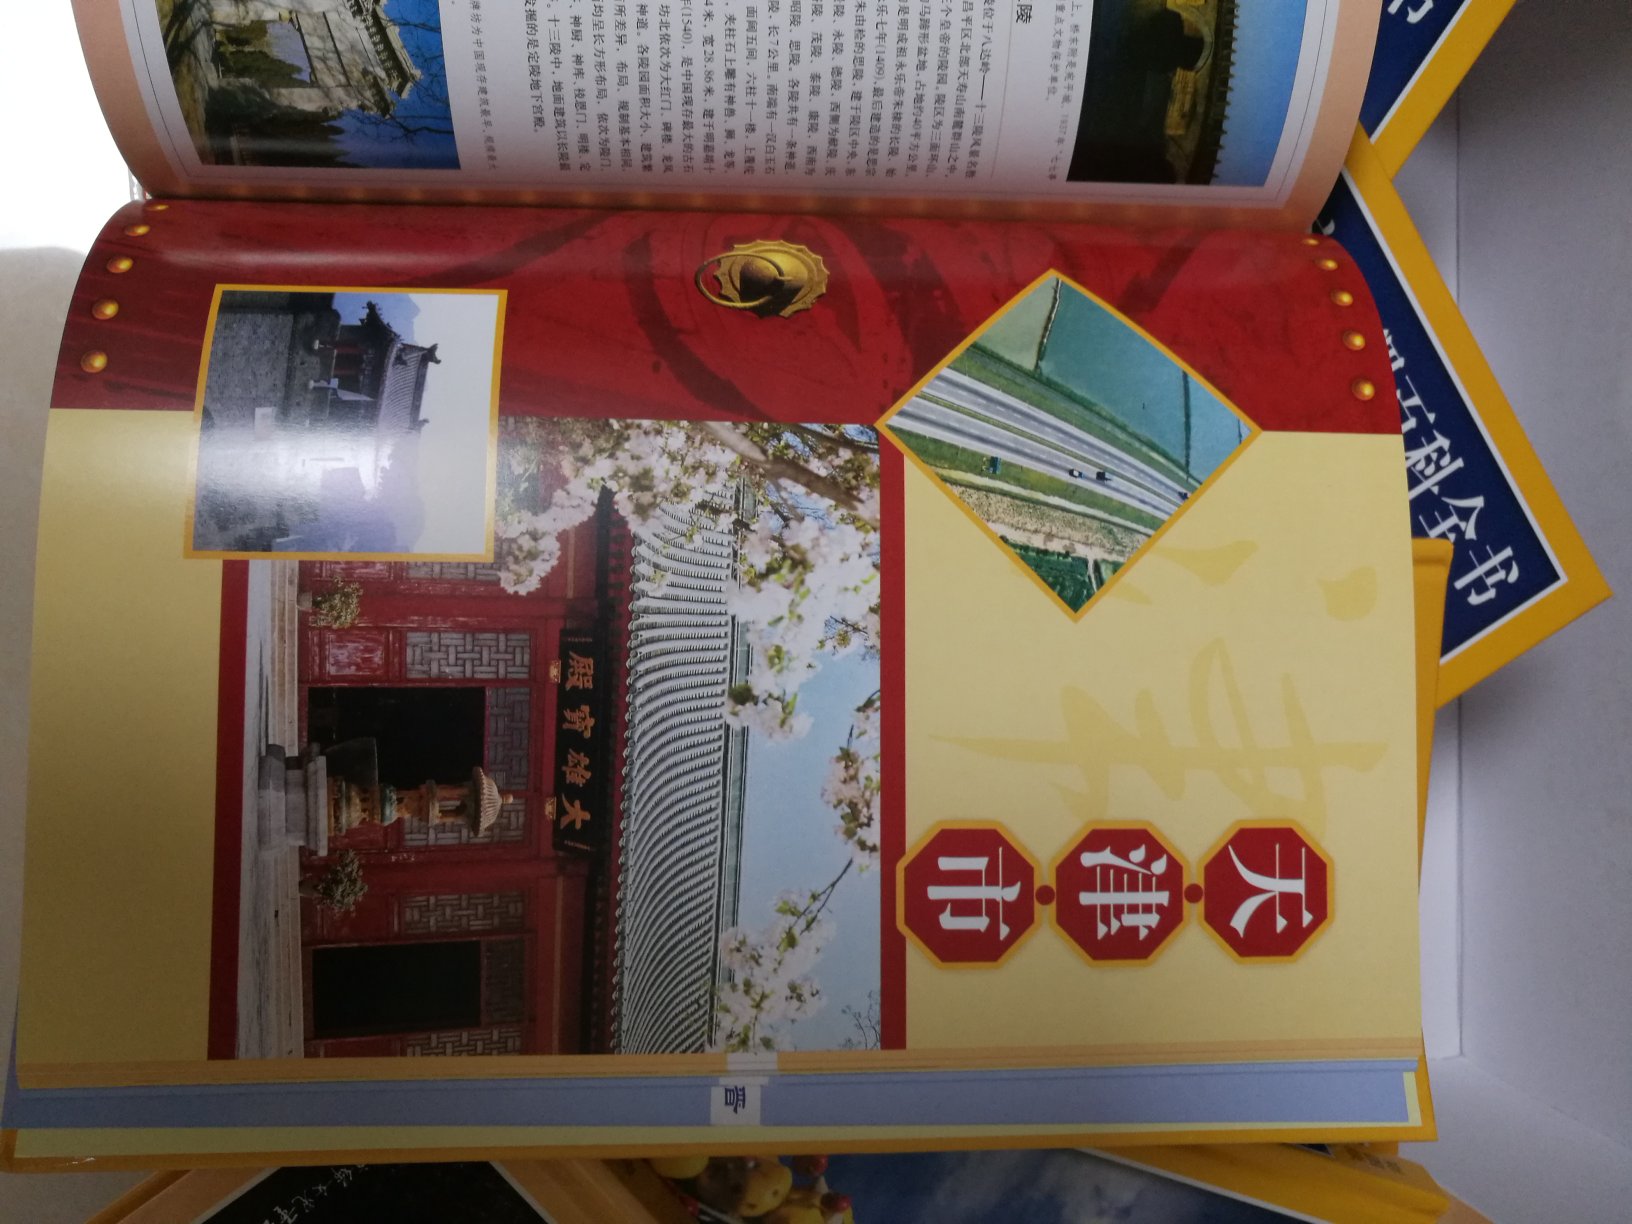 看着搞活动，就果断下手，准备跟儿子一起认识中国地理。结果一起买了三本书只到了另外两本，客服告诉是漏发了，多等了两天。这套书一共6本，包装精美，内容全面，可以让儿子认识认识中国。